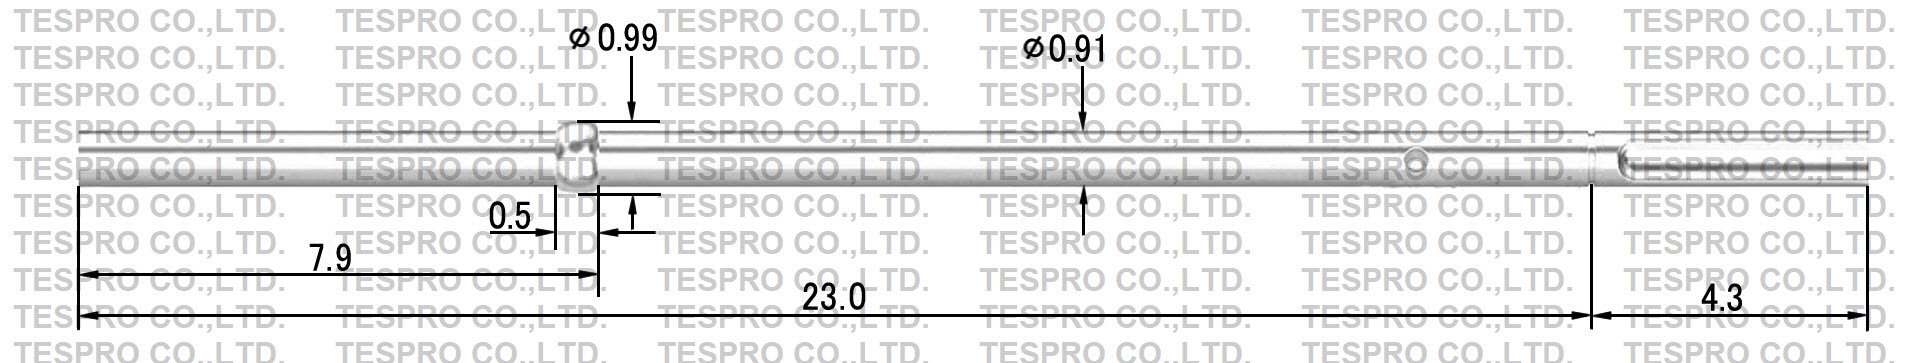 http://tespro-jp.com/product/072s_tespro.jpg